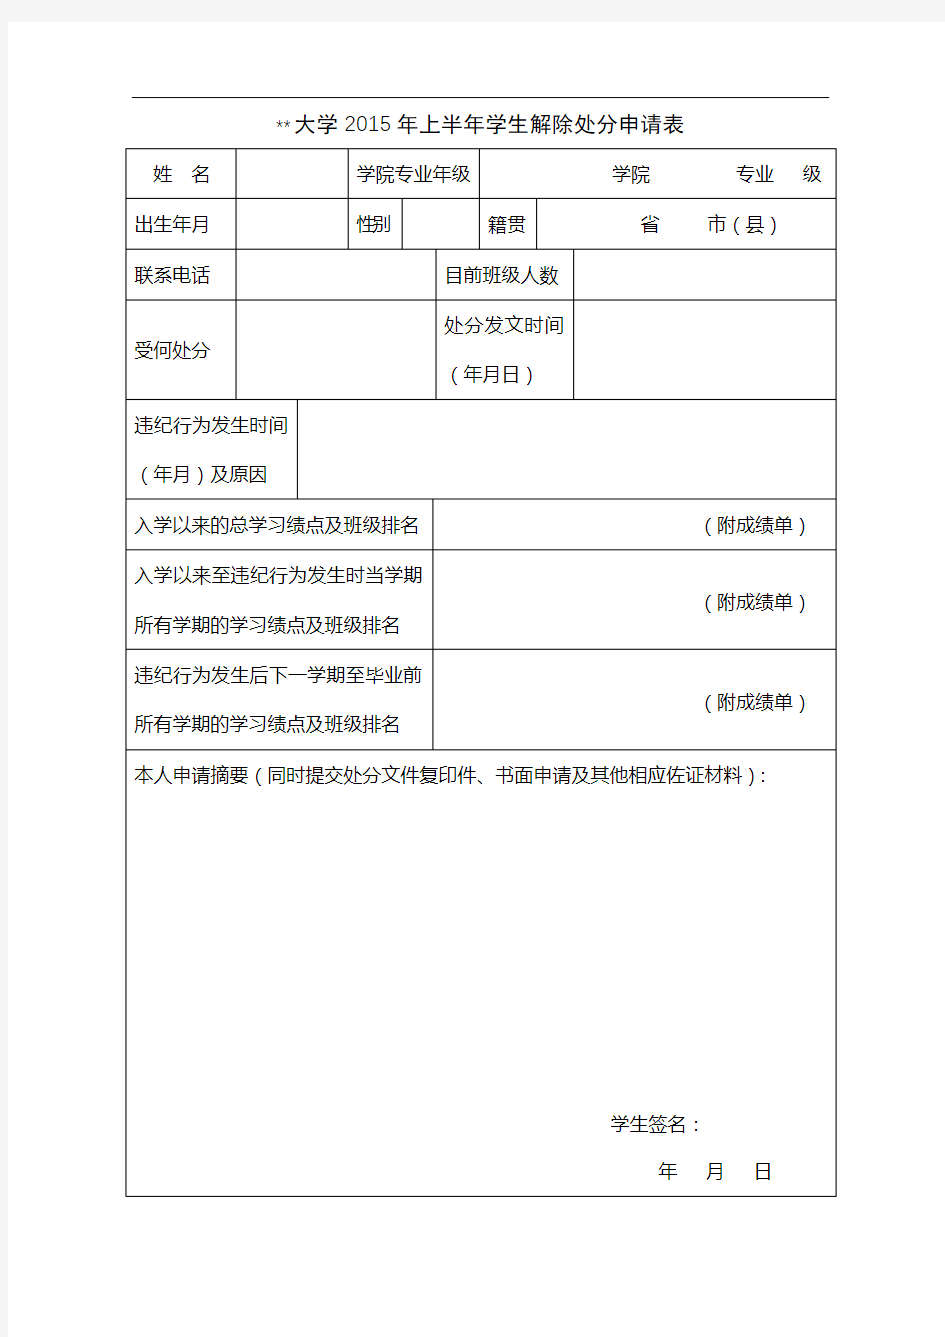 华侨大学2015年上半年学生解除处分申请表【模板】